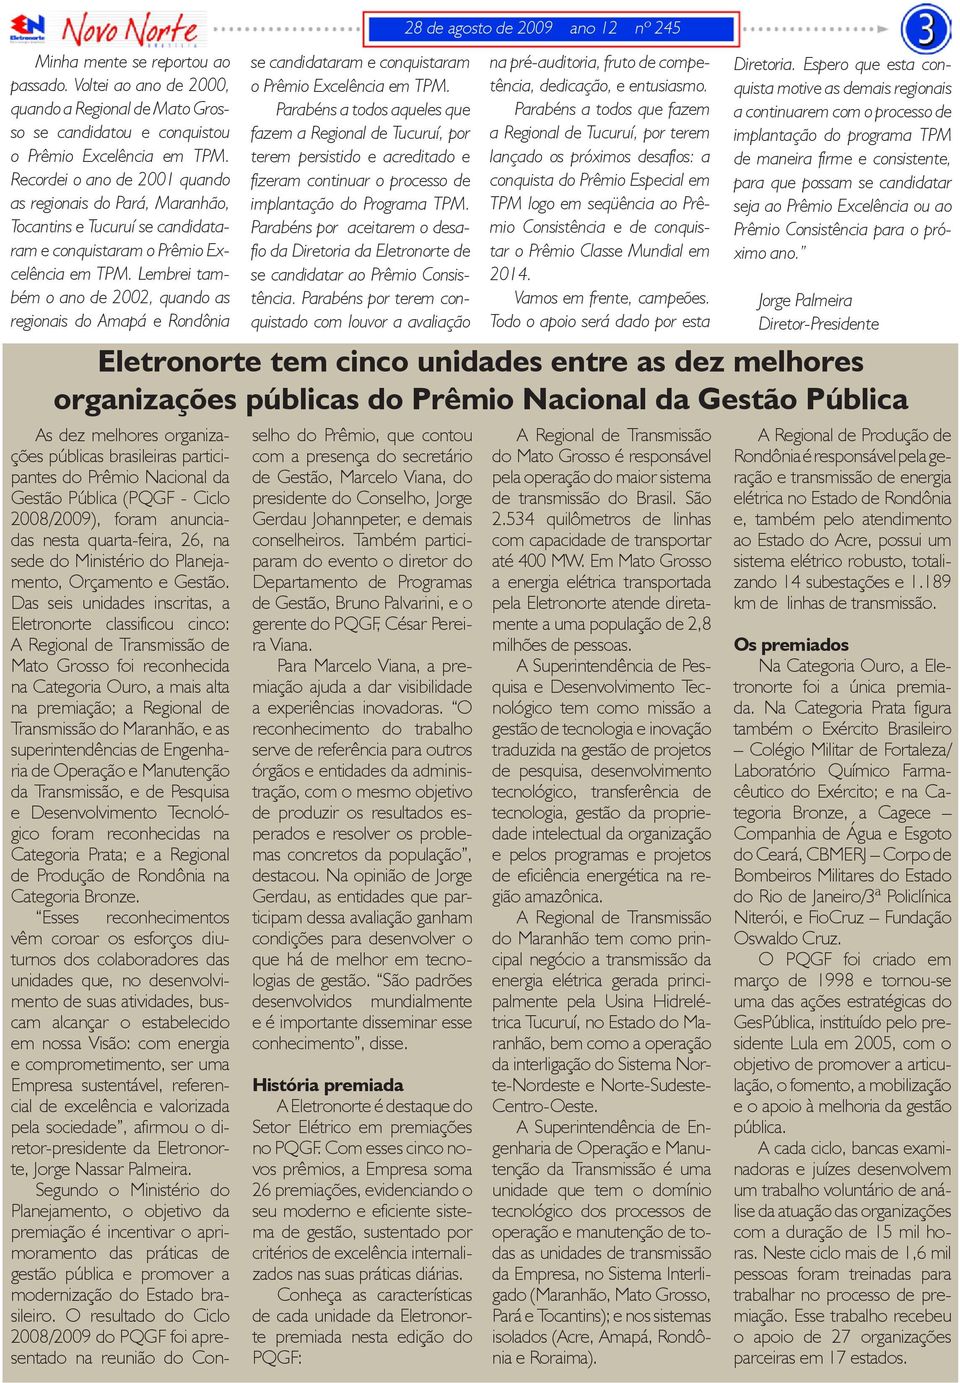 Lembrei também o ano de 2002, quando as regionais do Amapá e Rondônia As dez melhores organizações públicas brasileiras participantes do Prêmio Nacional da Gestão Pública (PQGF - Ciclo 2008/2009),